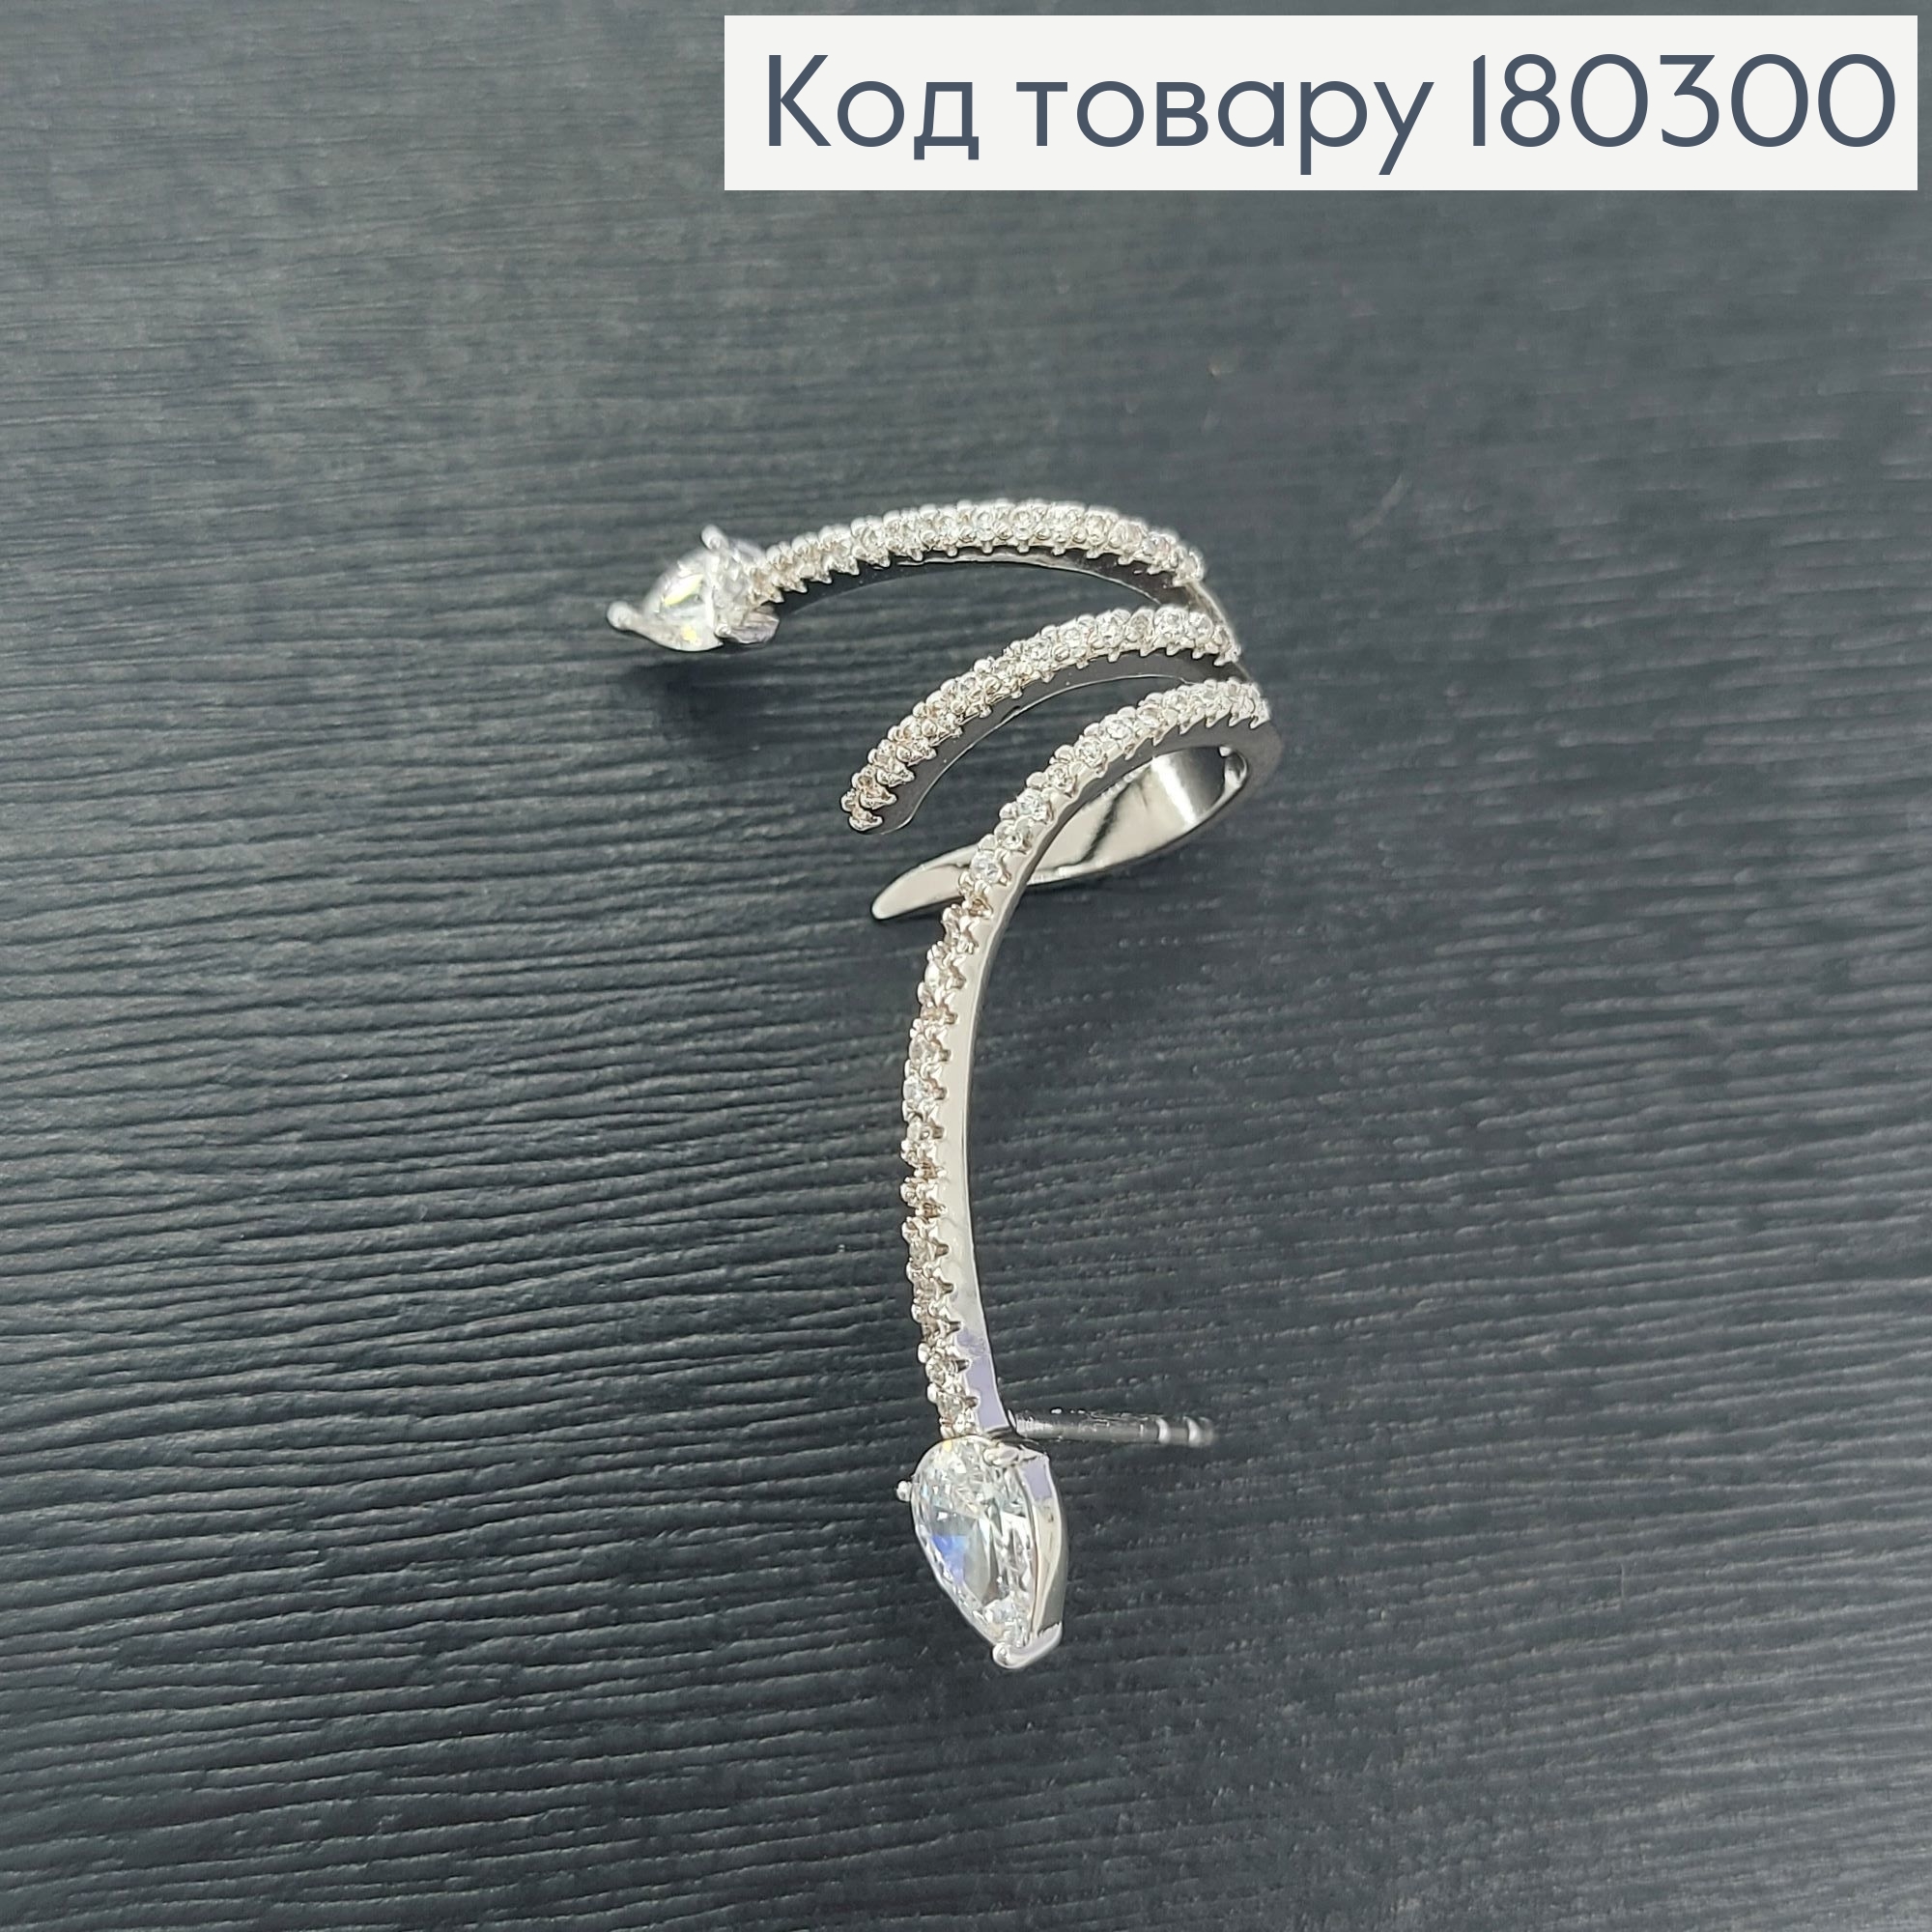  Серьги гвозди на хрящ змея с камнем родироване   Xuping 180300 фото 3